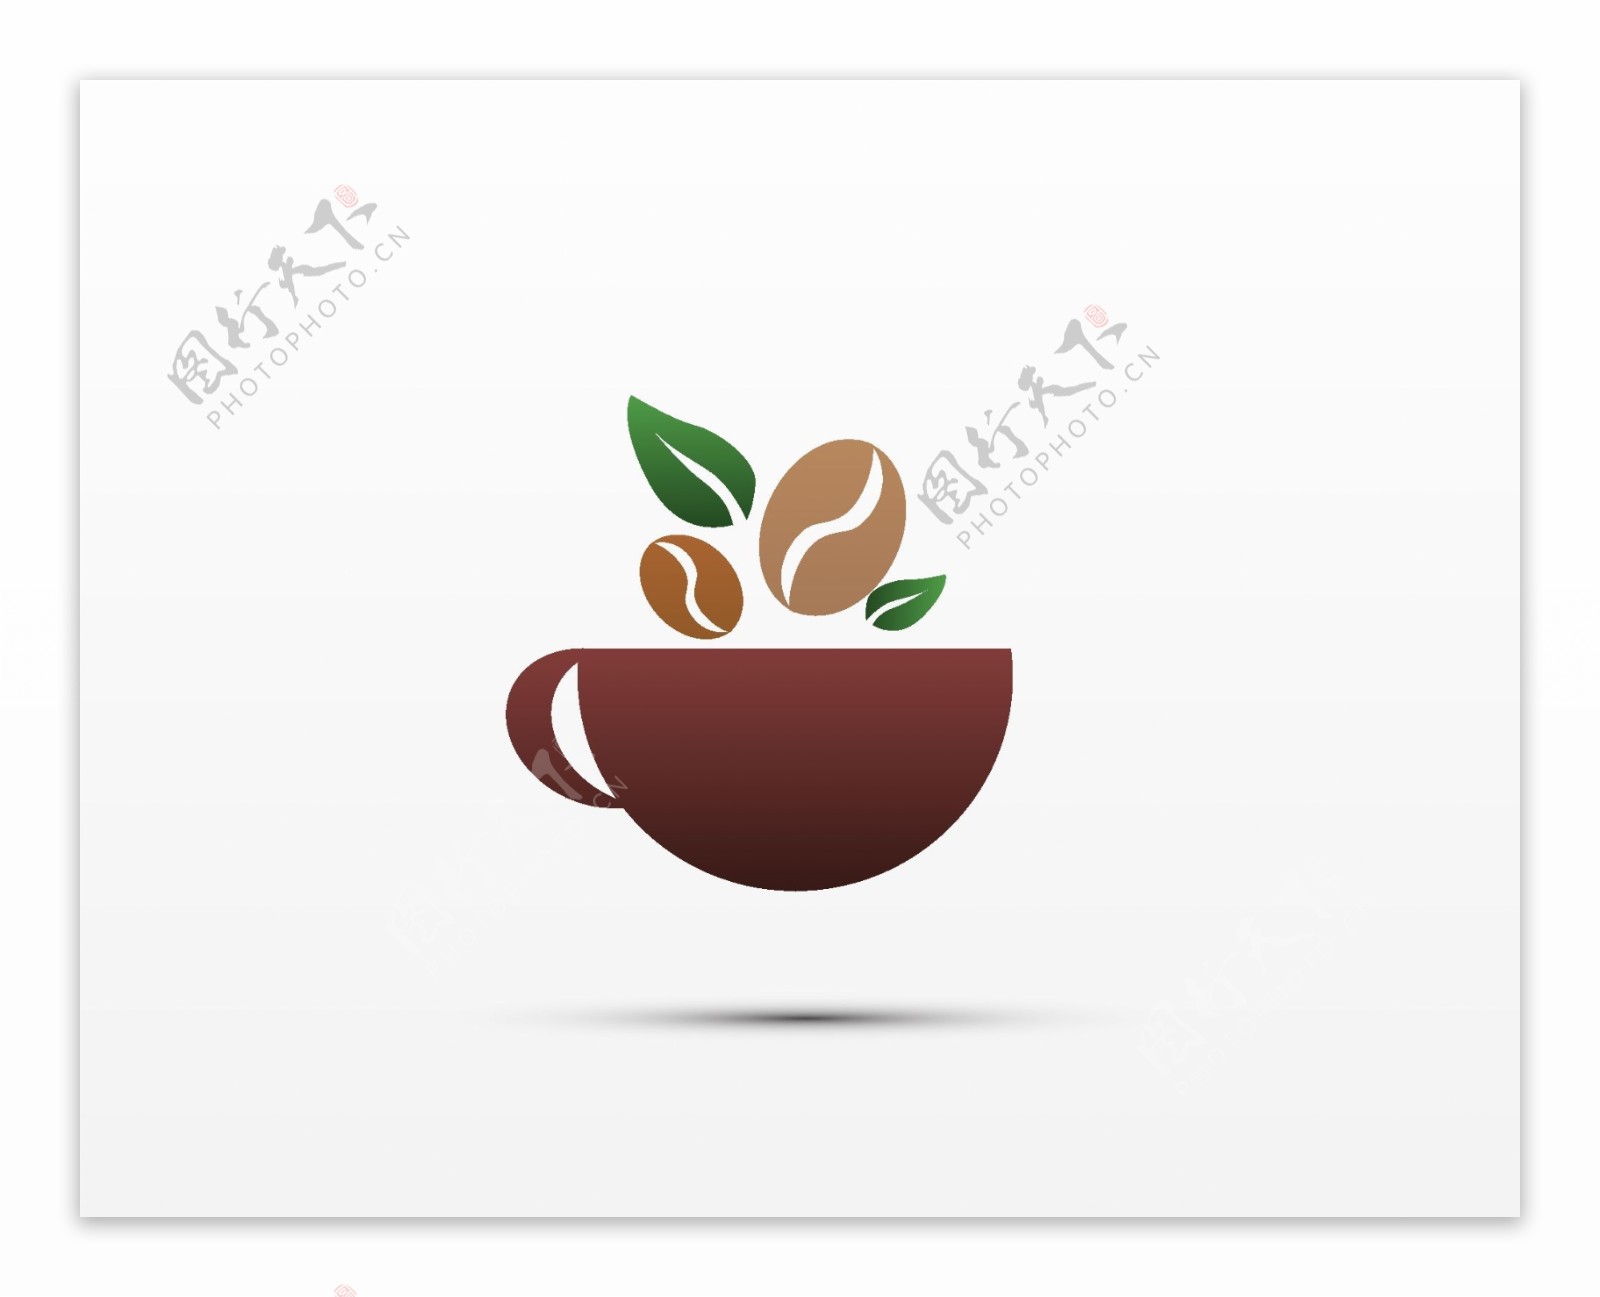 抽像时尚咖啡商标logo